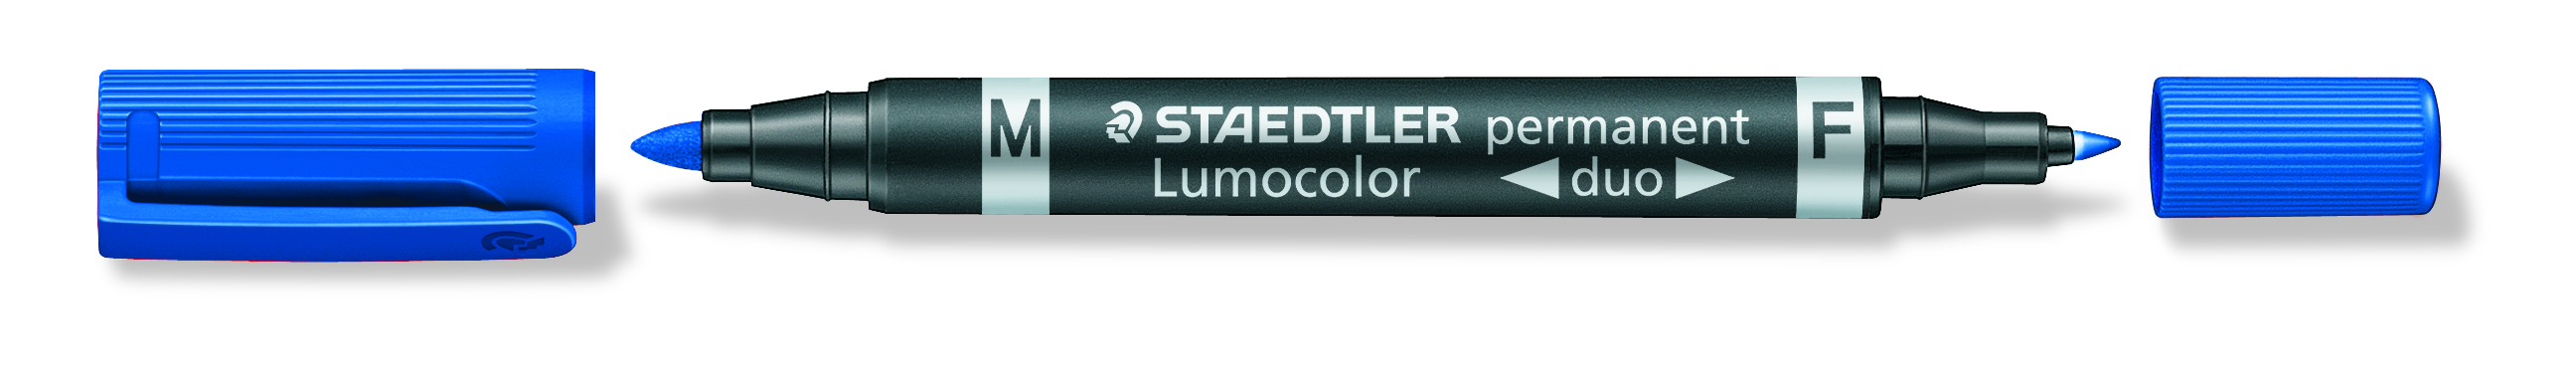 Marker Lumocolor Duo Perm 0,6-1,5mm bl, Staedtler 348-3,10stk